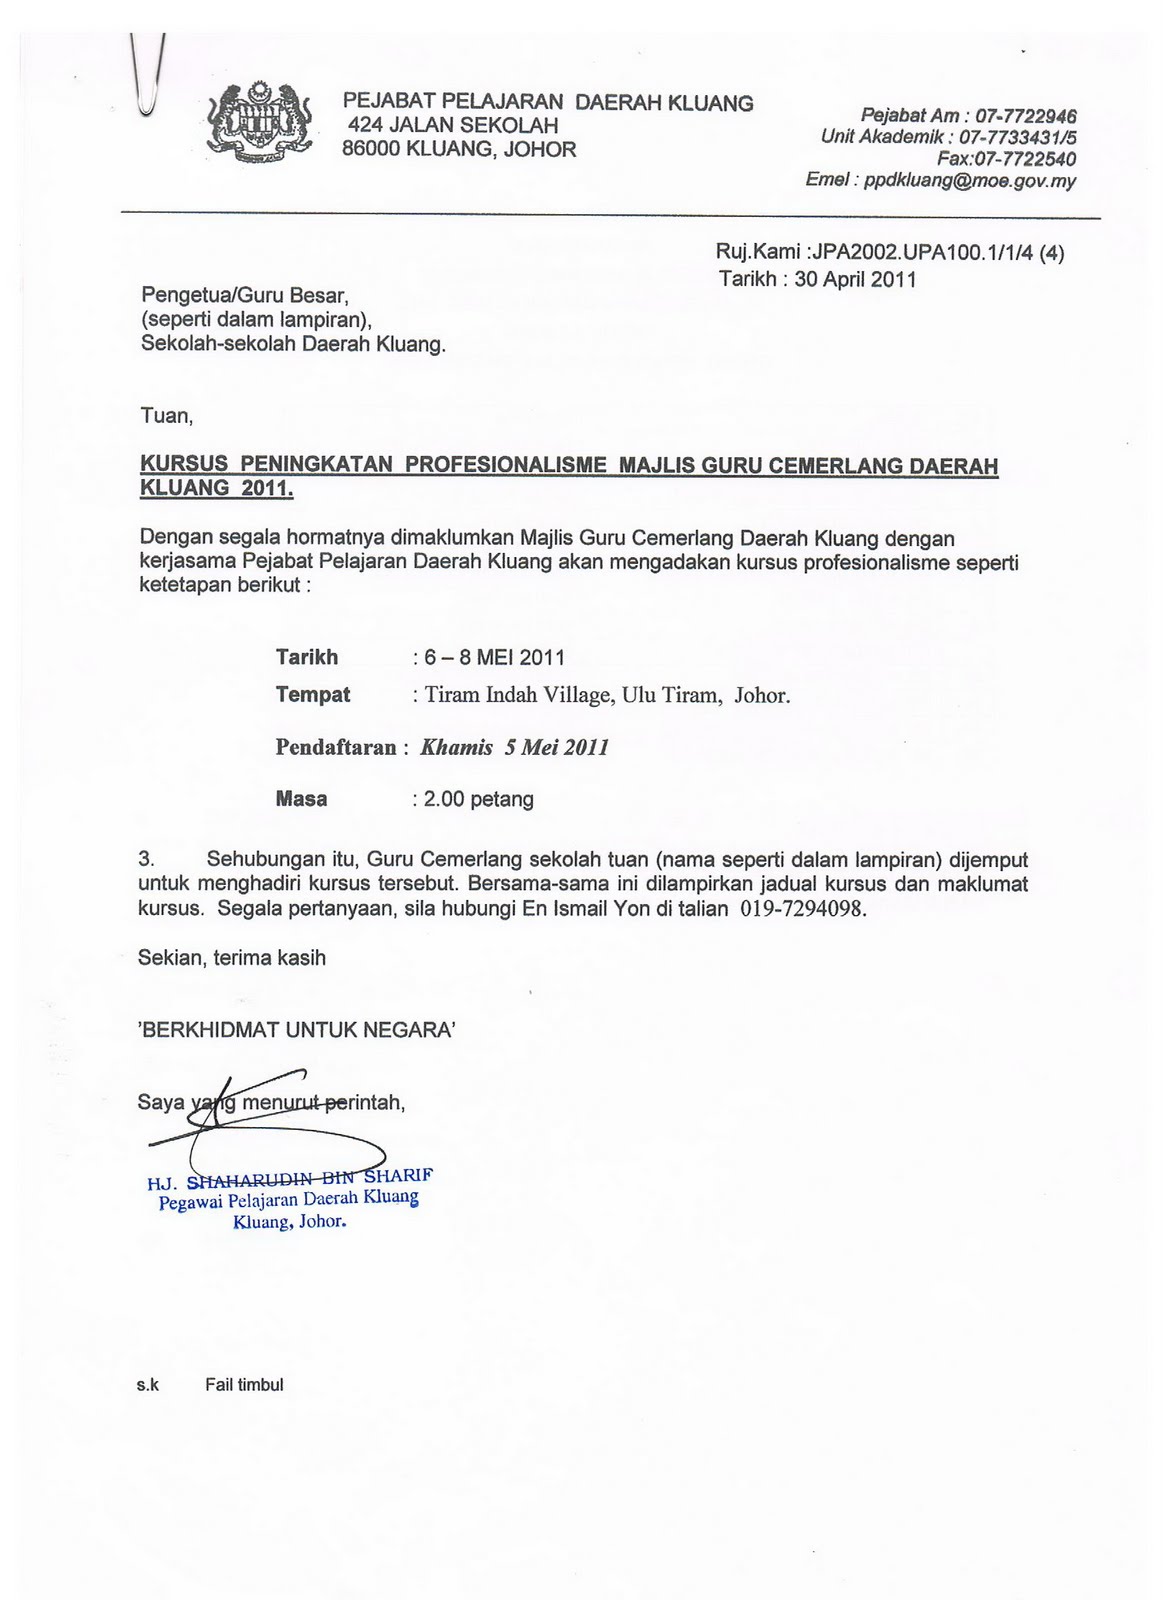 Contoh Surat Panggilan Gotong Royong - Laporan Aktiviti 